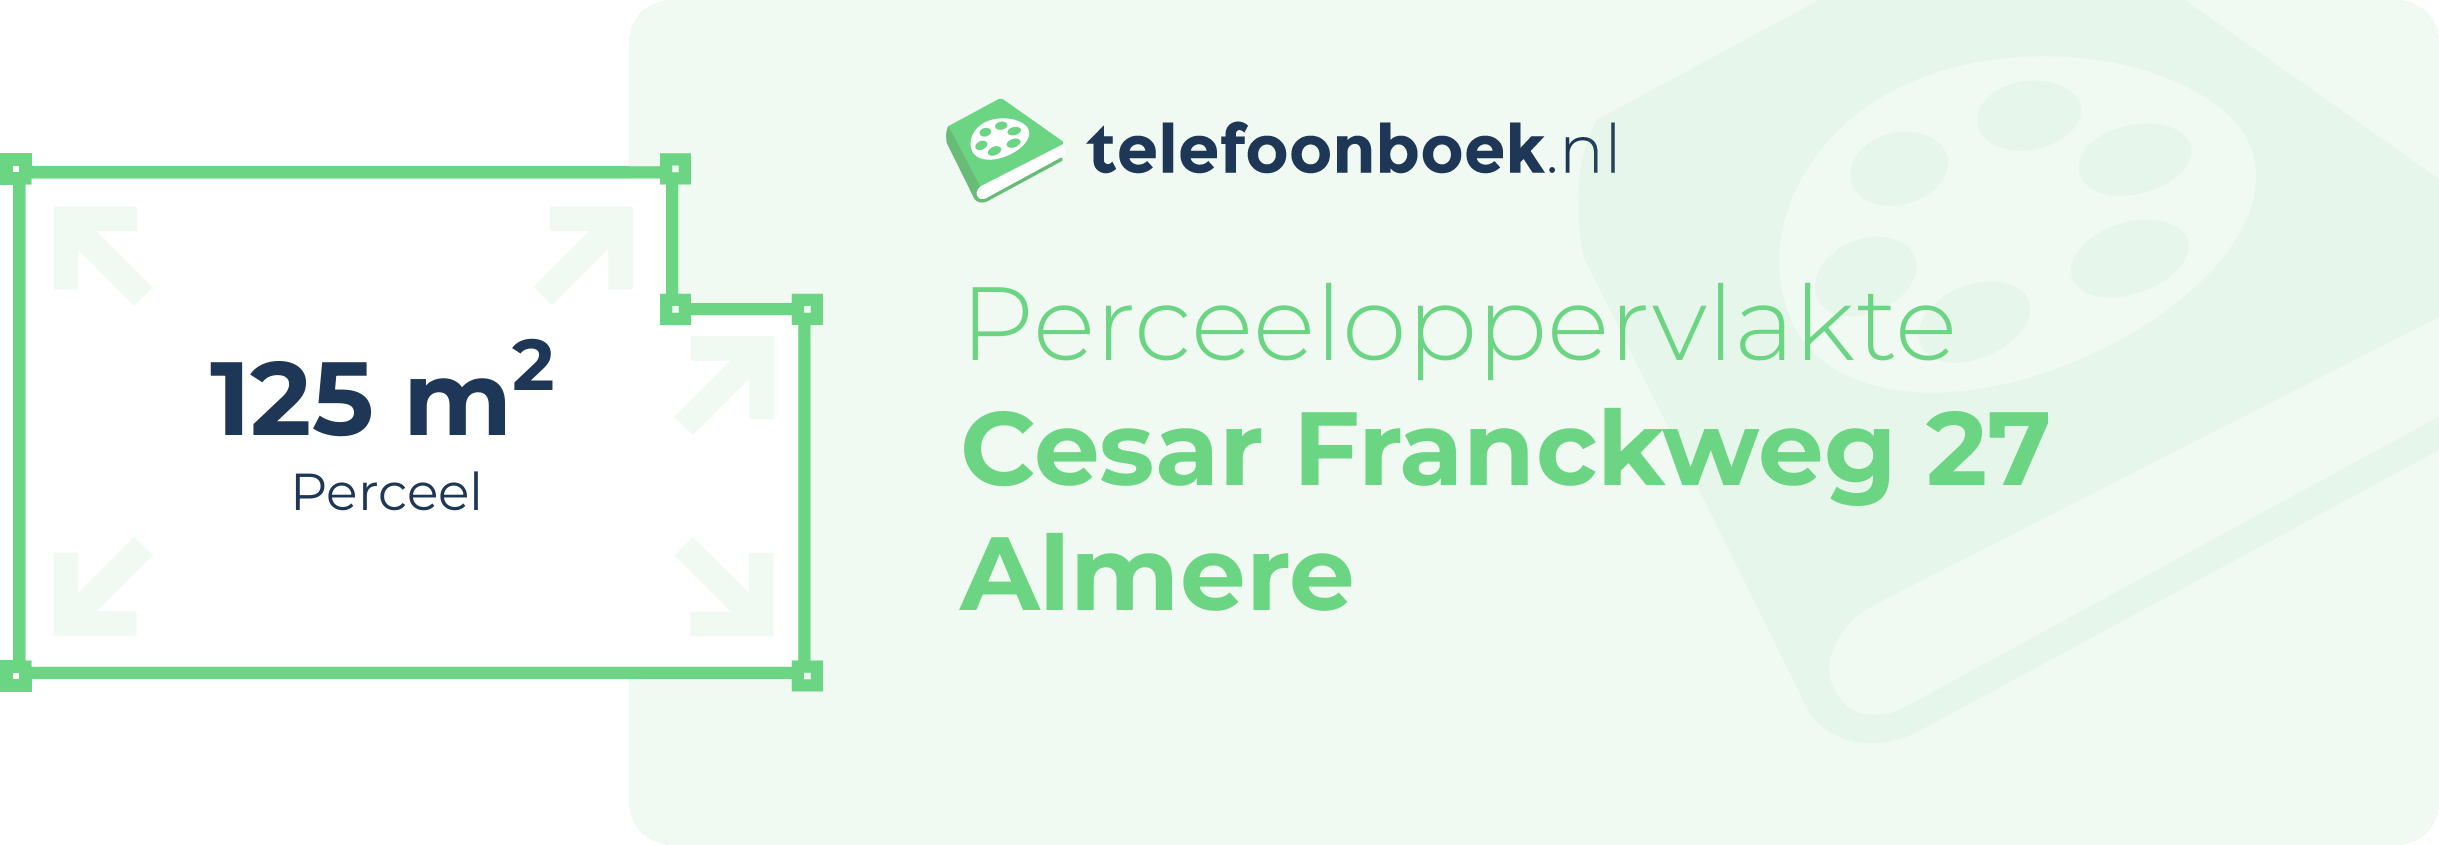 Perceeloppervlakte Cesar Franckweg 27 Almere